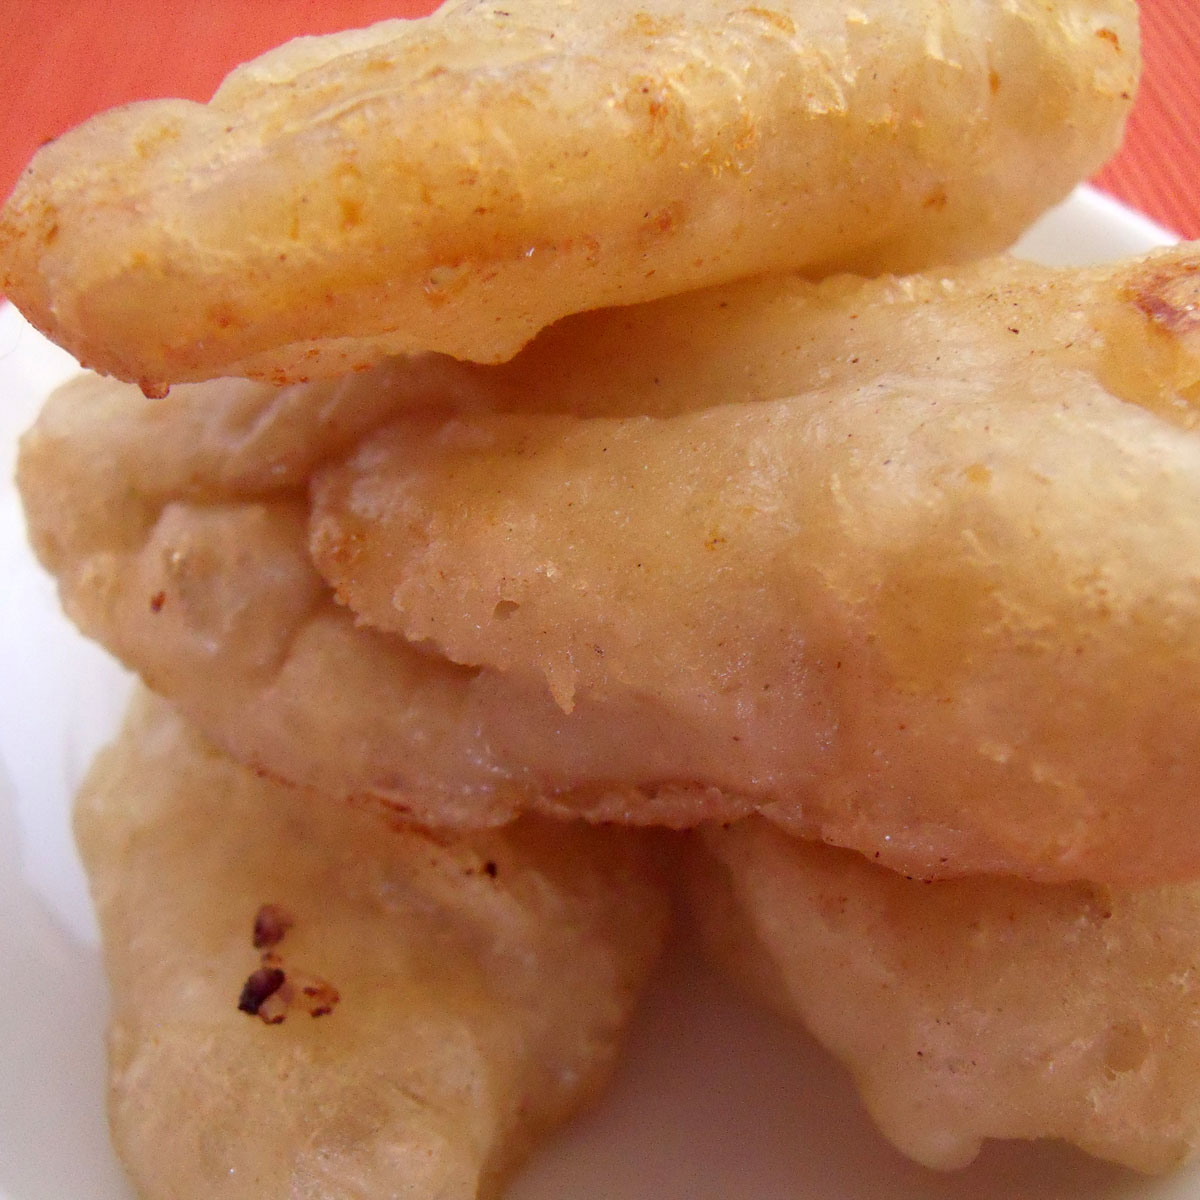 Pisang goreng recipe – Fried banana fritters